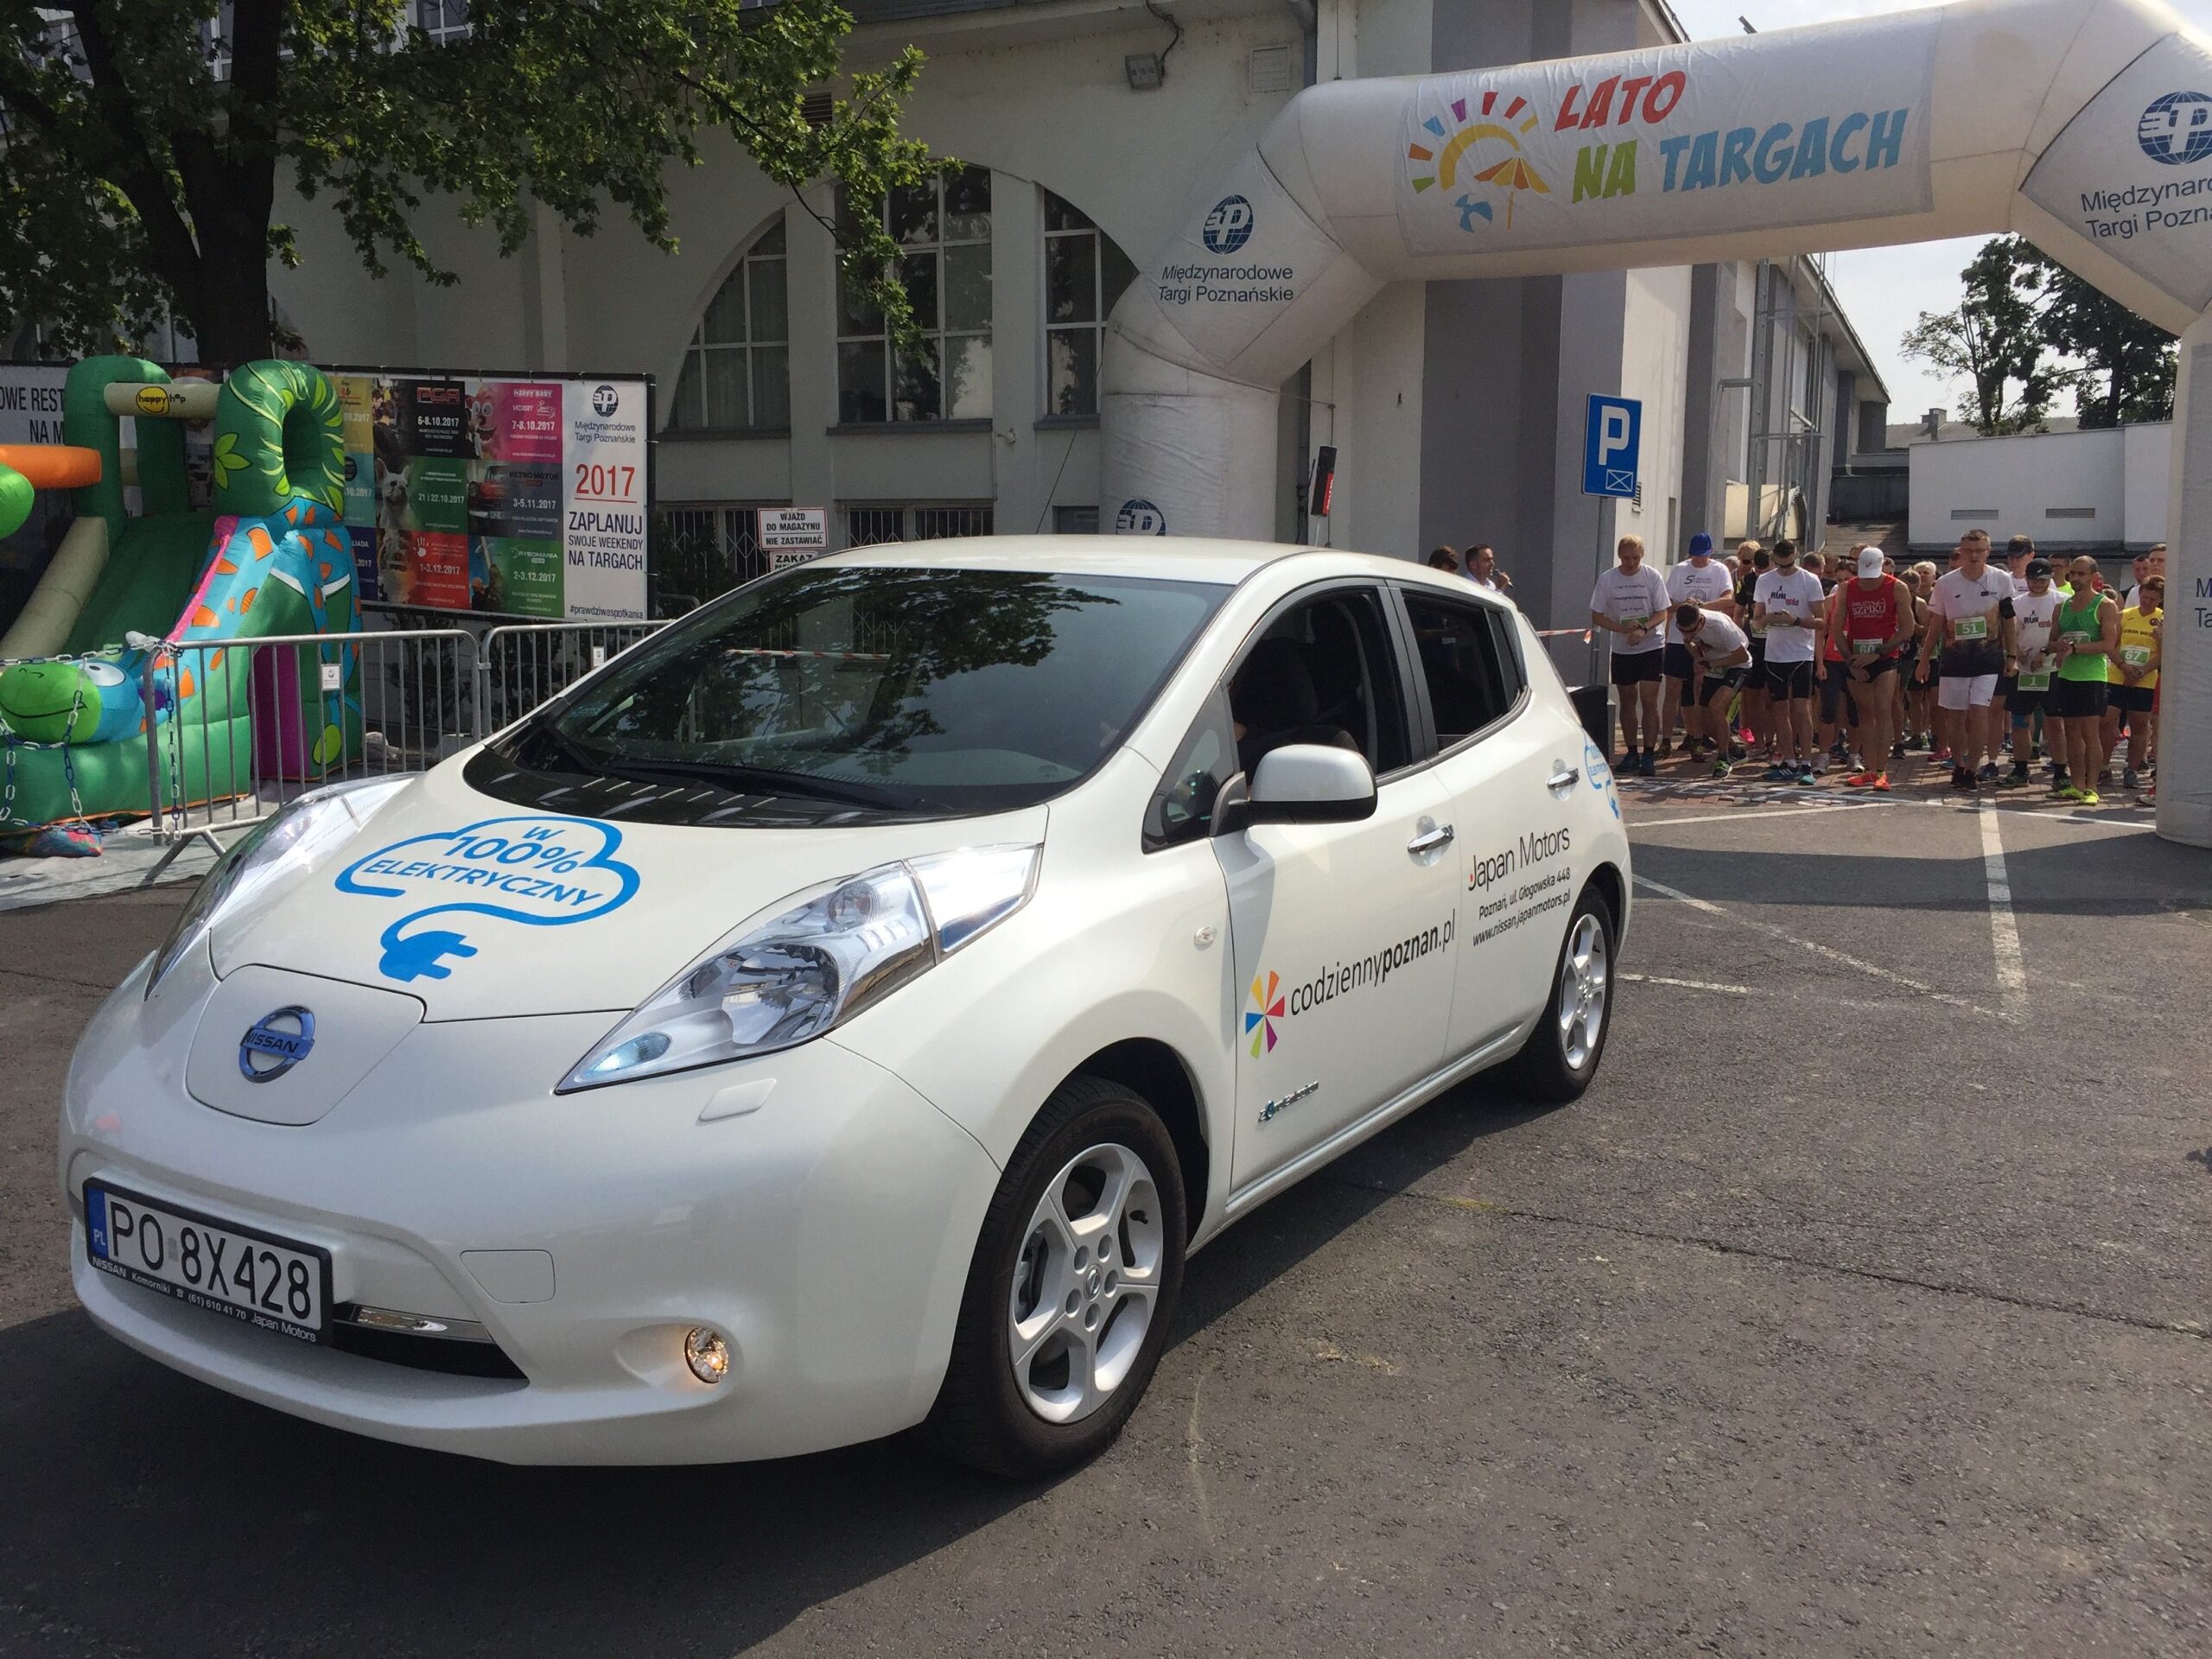 Wygoda, ekologia i cisza – już w sobotę okazja do jazd próbnych samochodem elektrycznym Nissan Leaf podczas “Poznań zrzuca kilogramy”!